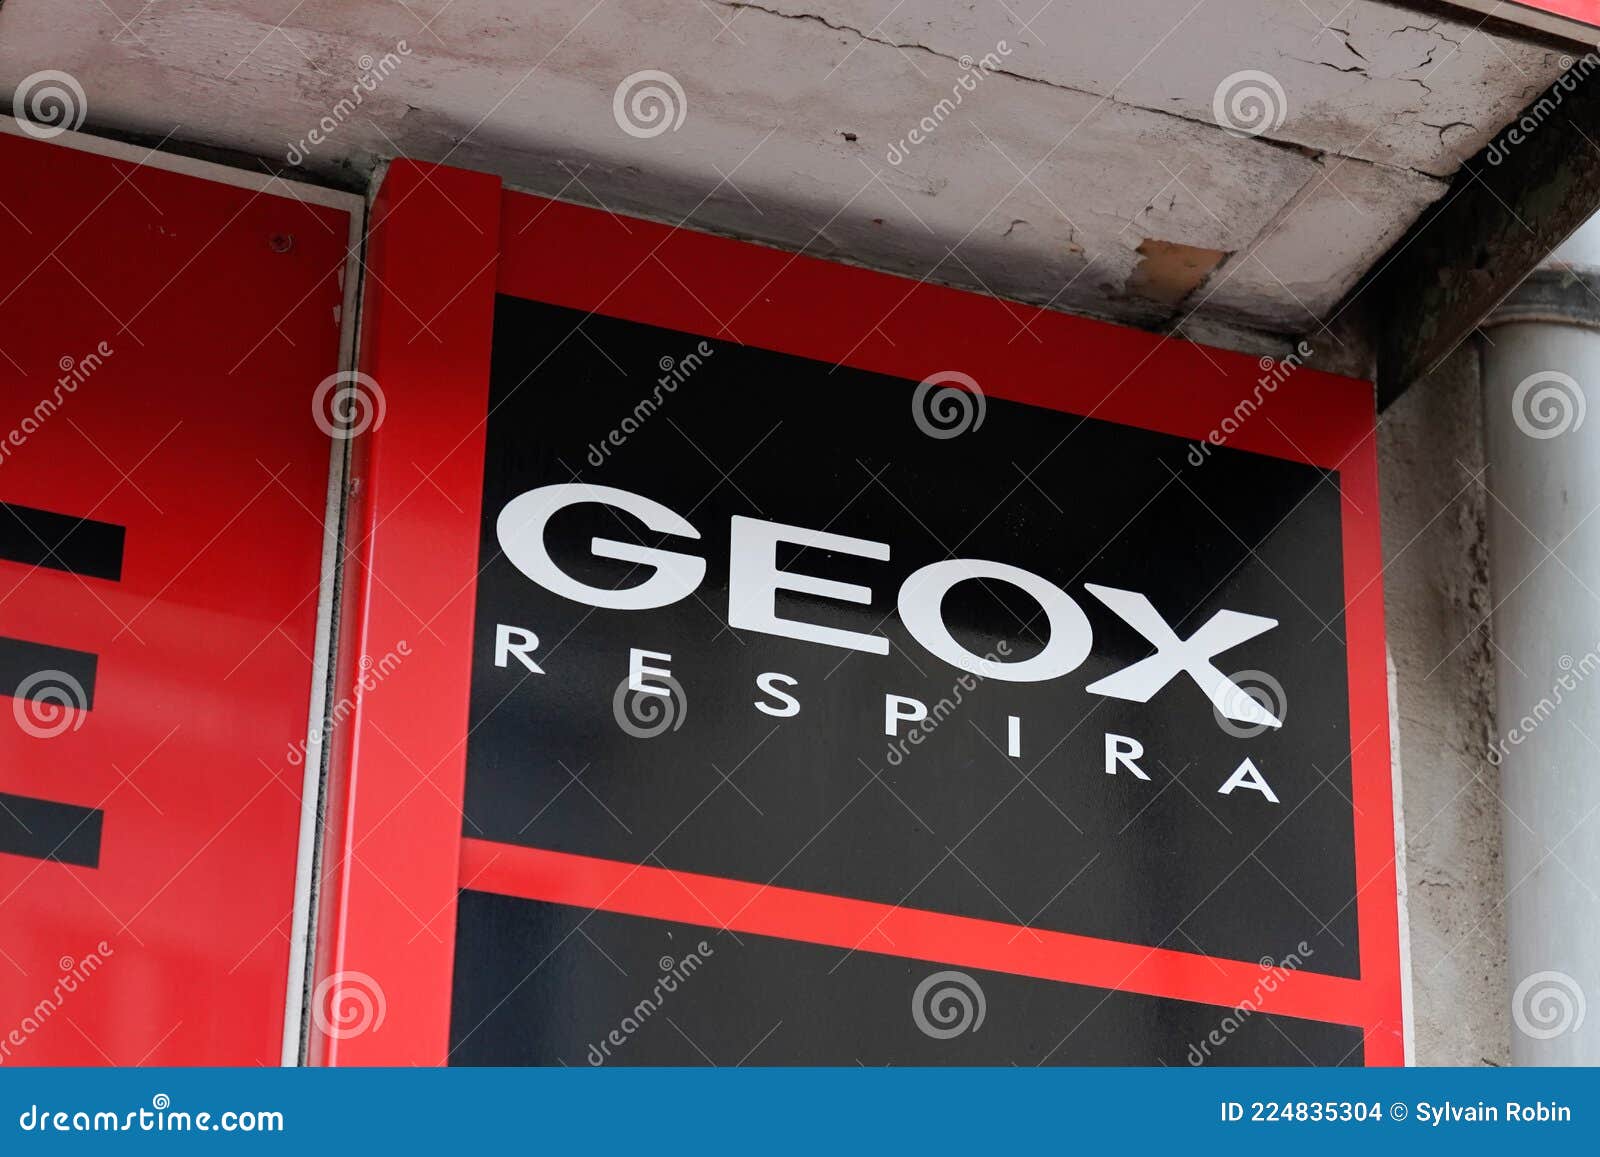 Geox Respira Marca Texto Y Logotipo Marca De Zapatos De Calzado Imagen de editorial - Imagen de edificio: 224835304